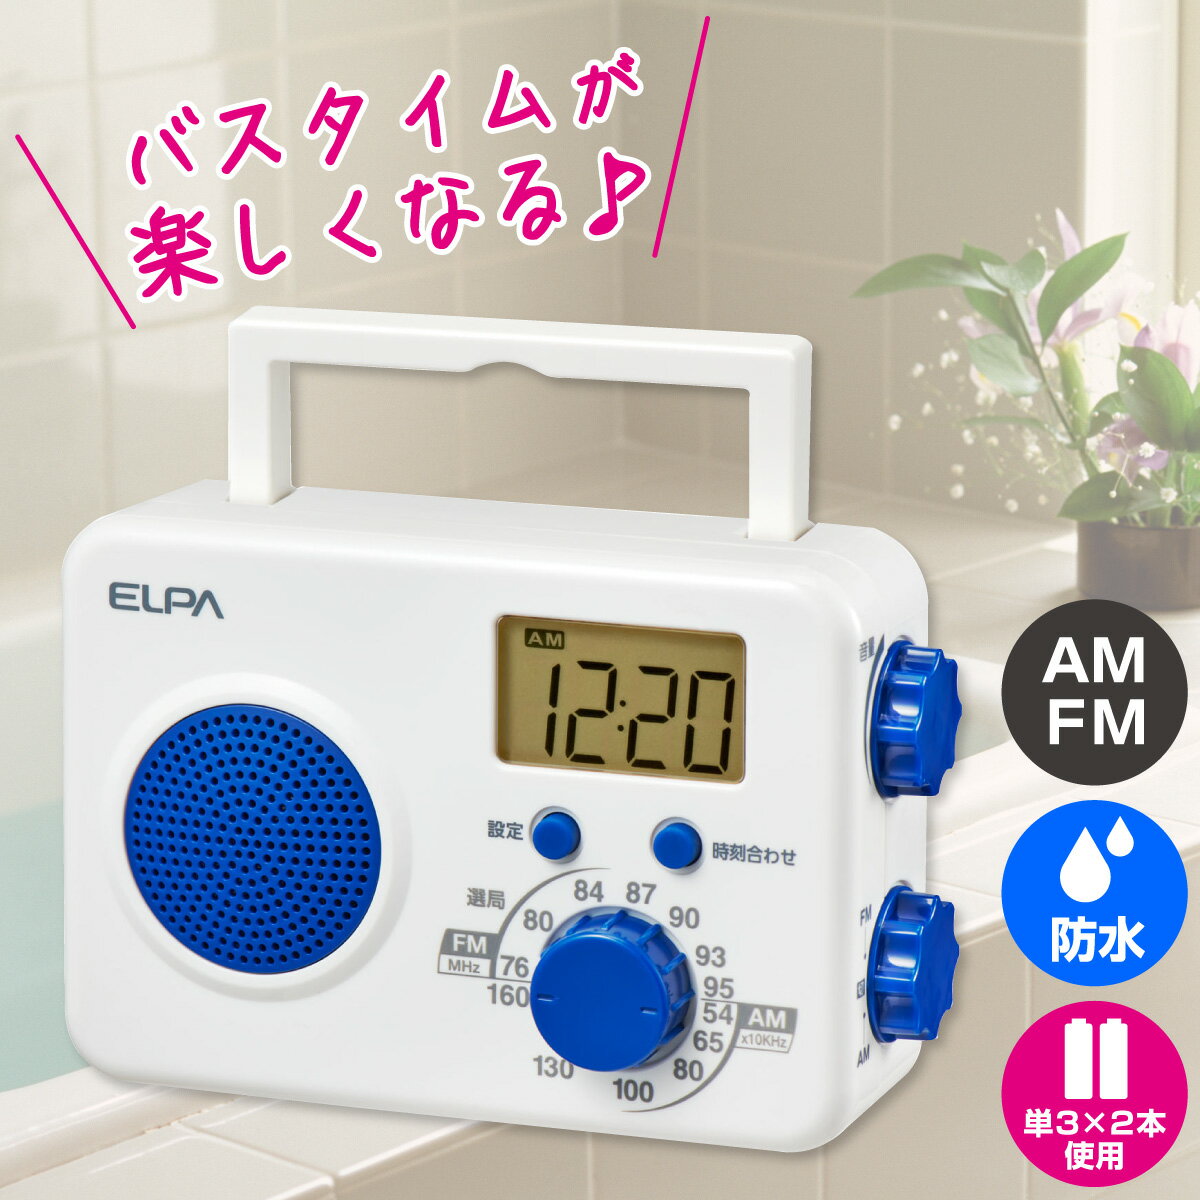 楽天でんきのパラダイス　電天堂エルパ FM/AM シャワーラジオ ER-W41F / 防沫形なのでお風呂でラジオが聴けます。キッチンでの利用も安心。